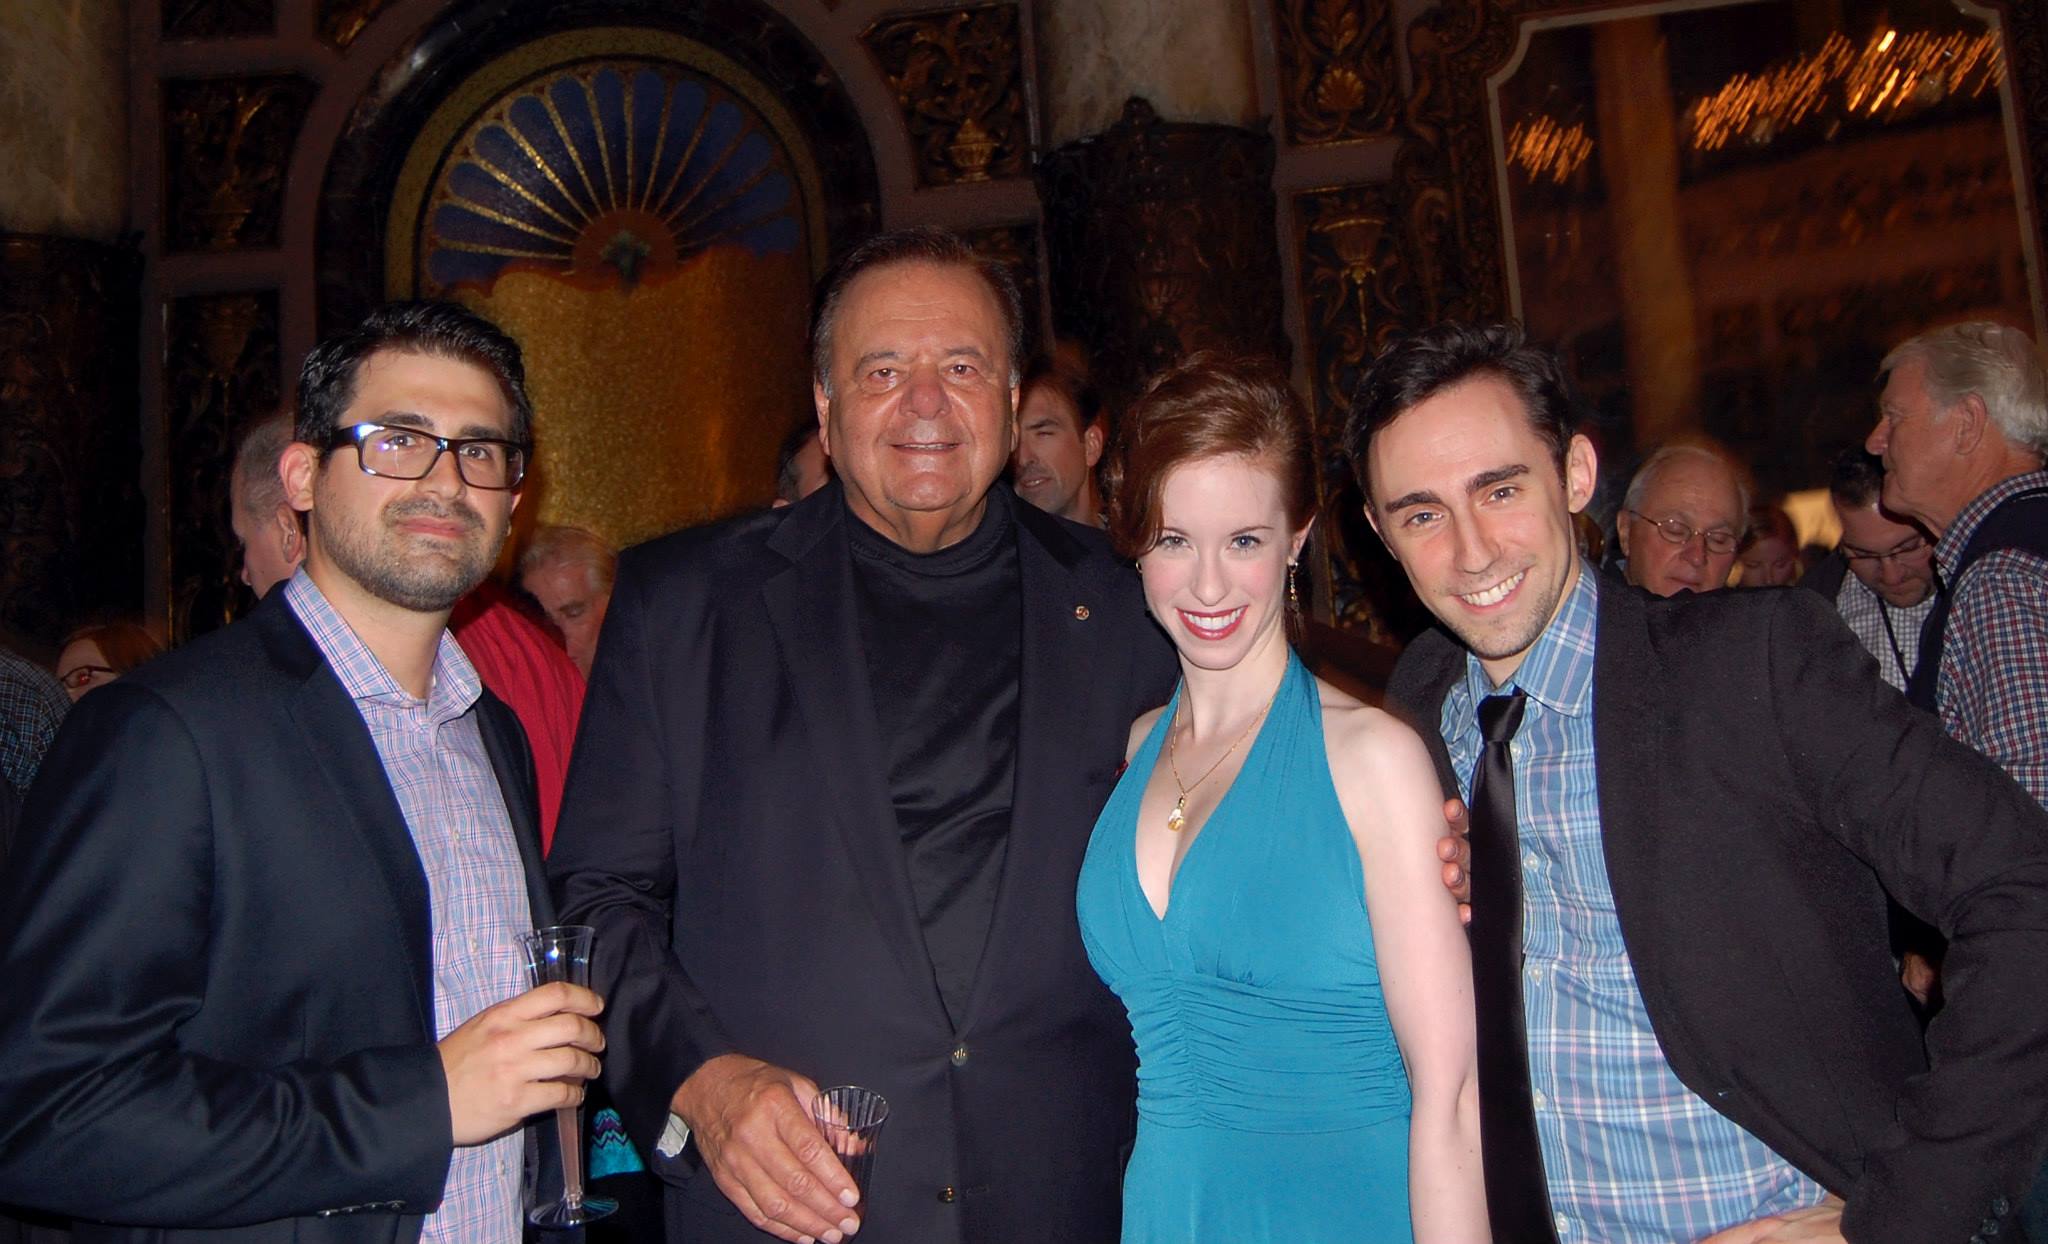 Kevin Keiser, Paul Sorvino, Elisabeth Ness, and Kevin Sebastian at the Golden Door International Film Festival